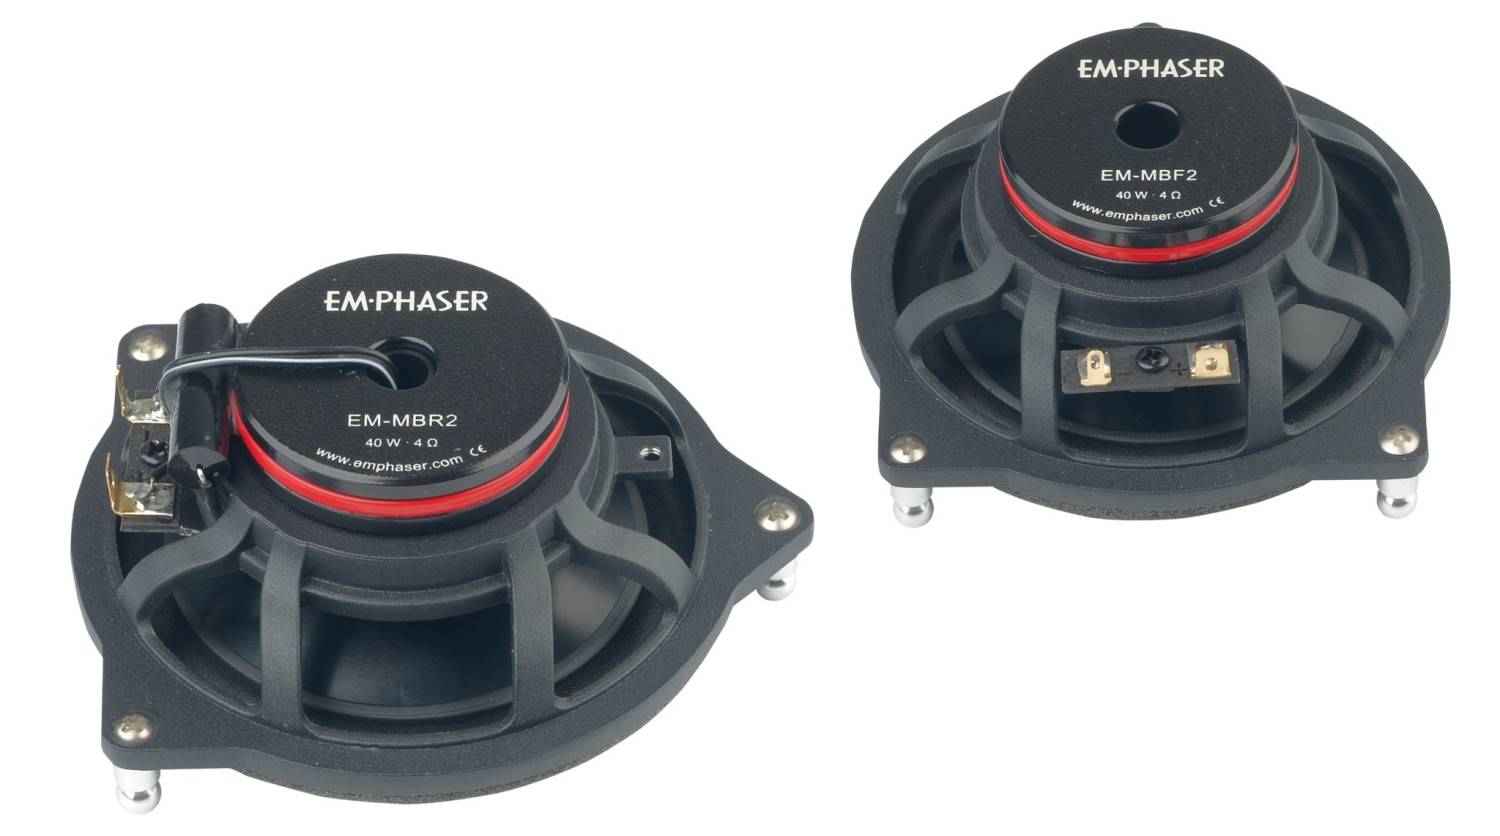 In-Car Lautsprecher fahrzeugspezifisch Emphaser EM-MBF2, Emphaser EM-MBR2 im Test , Bild 3